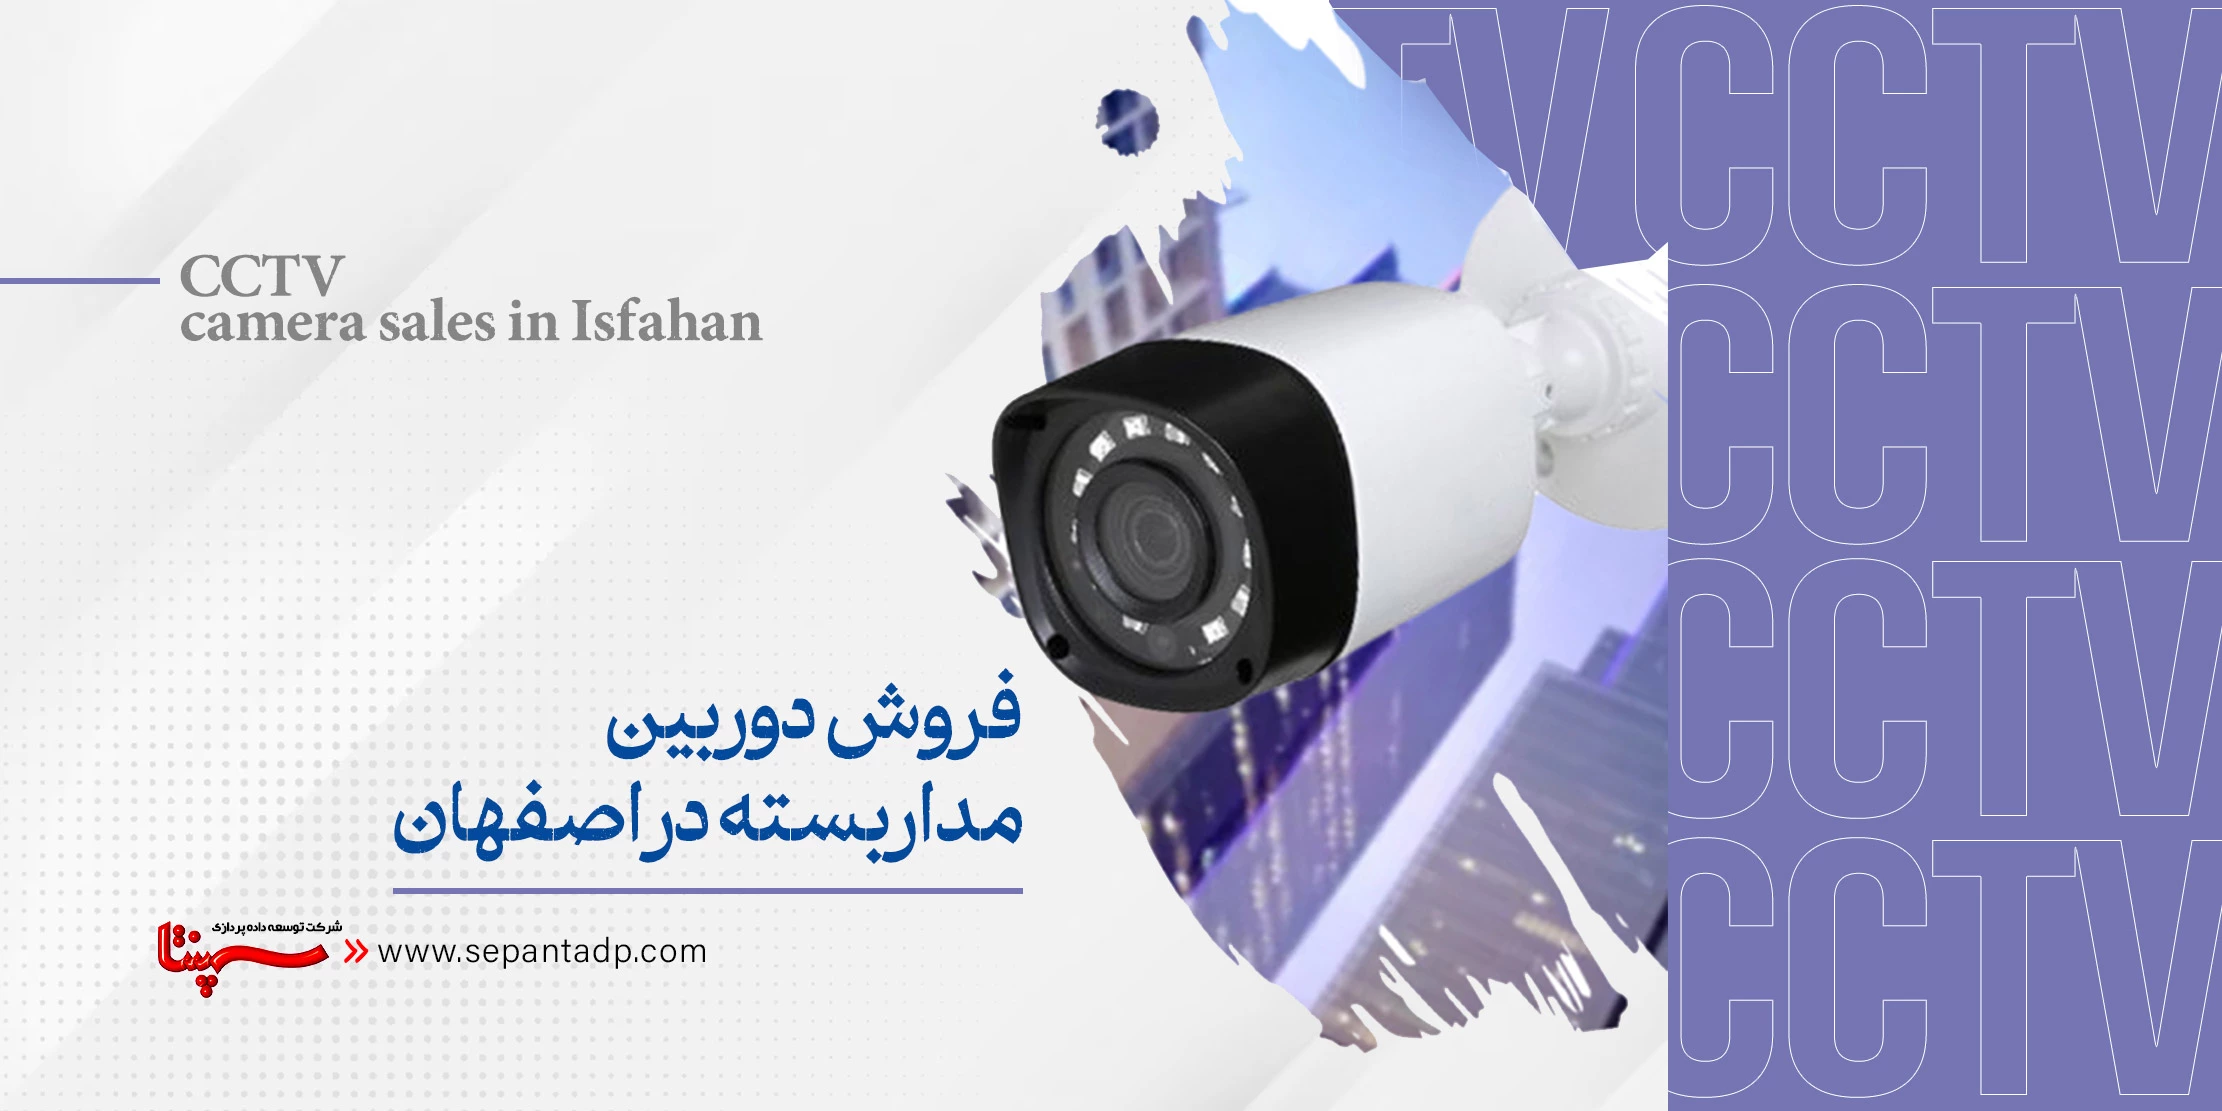 فروش دوربین مداربسته در اصفهان